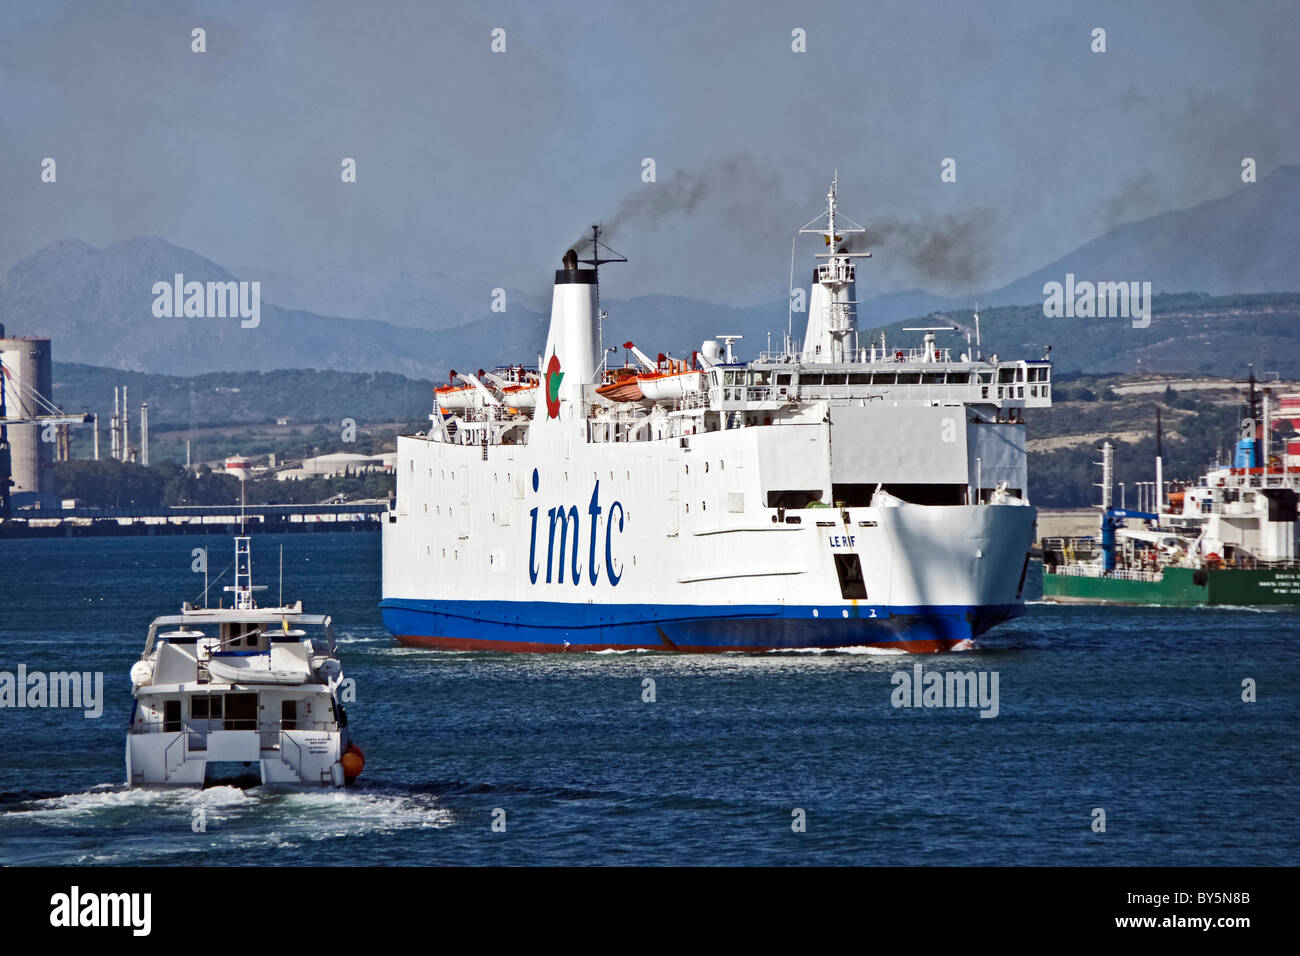 Le traversier IMTC Rif arrivant à Algeciras en Espagne. Elle opère à partir de là pour port Tanger Med au Maroc Banque D'Images